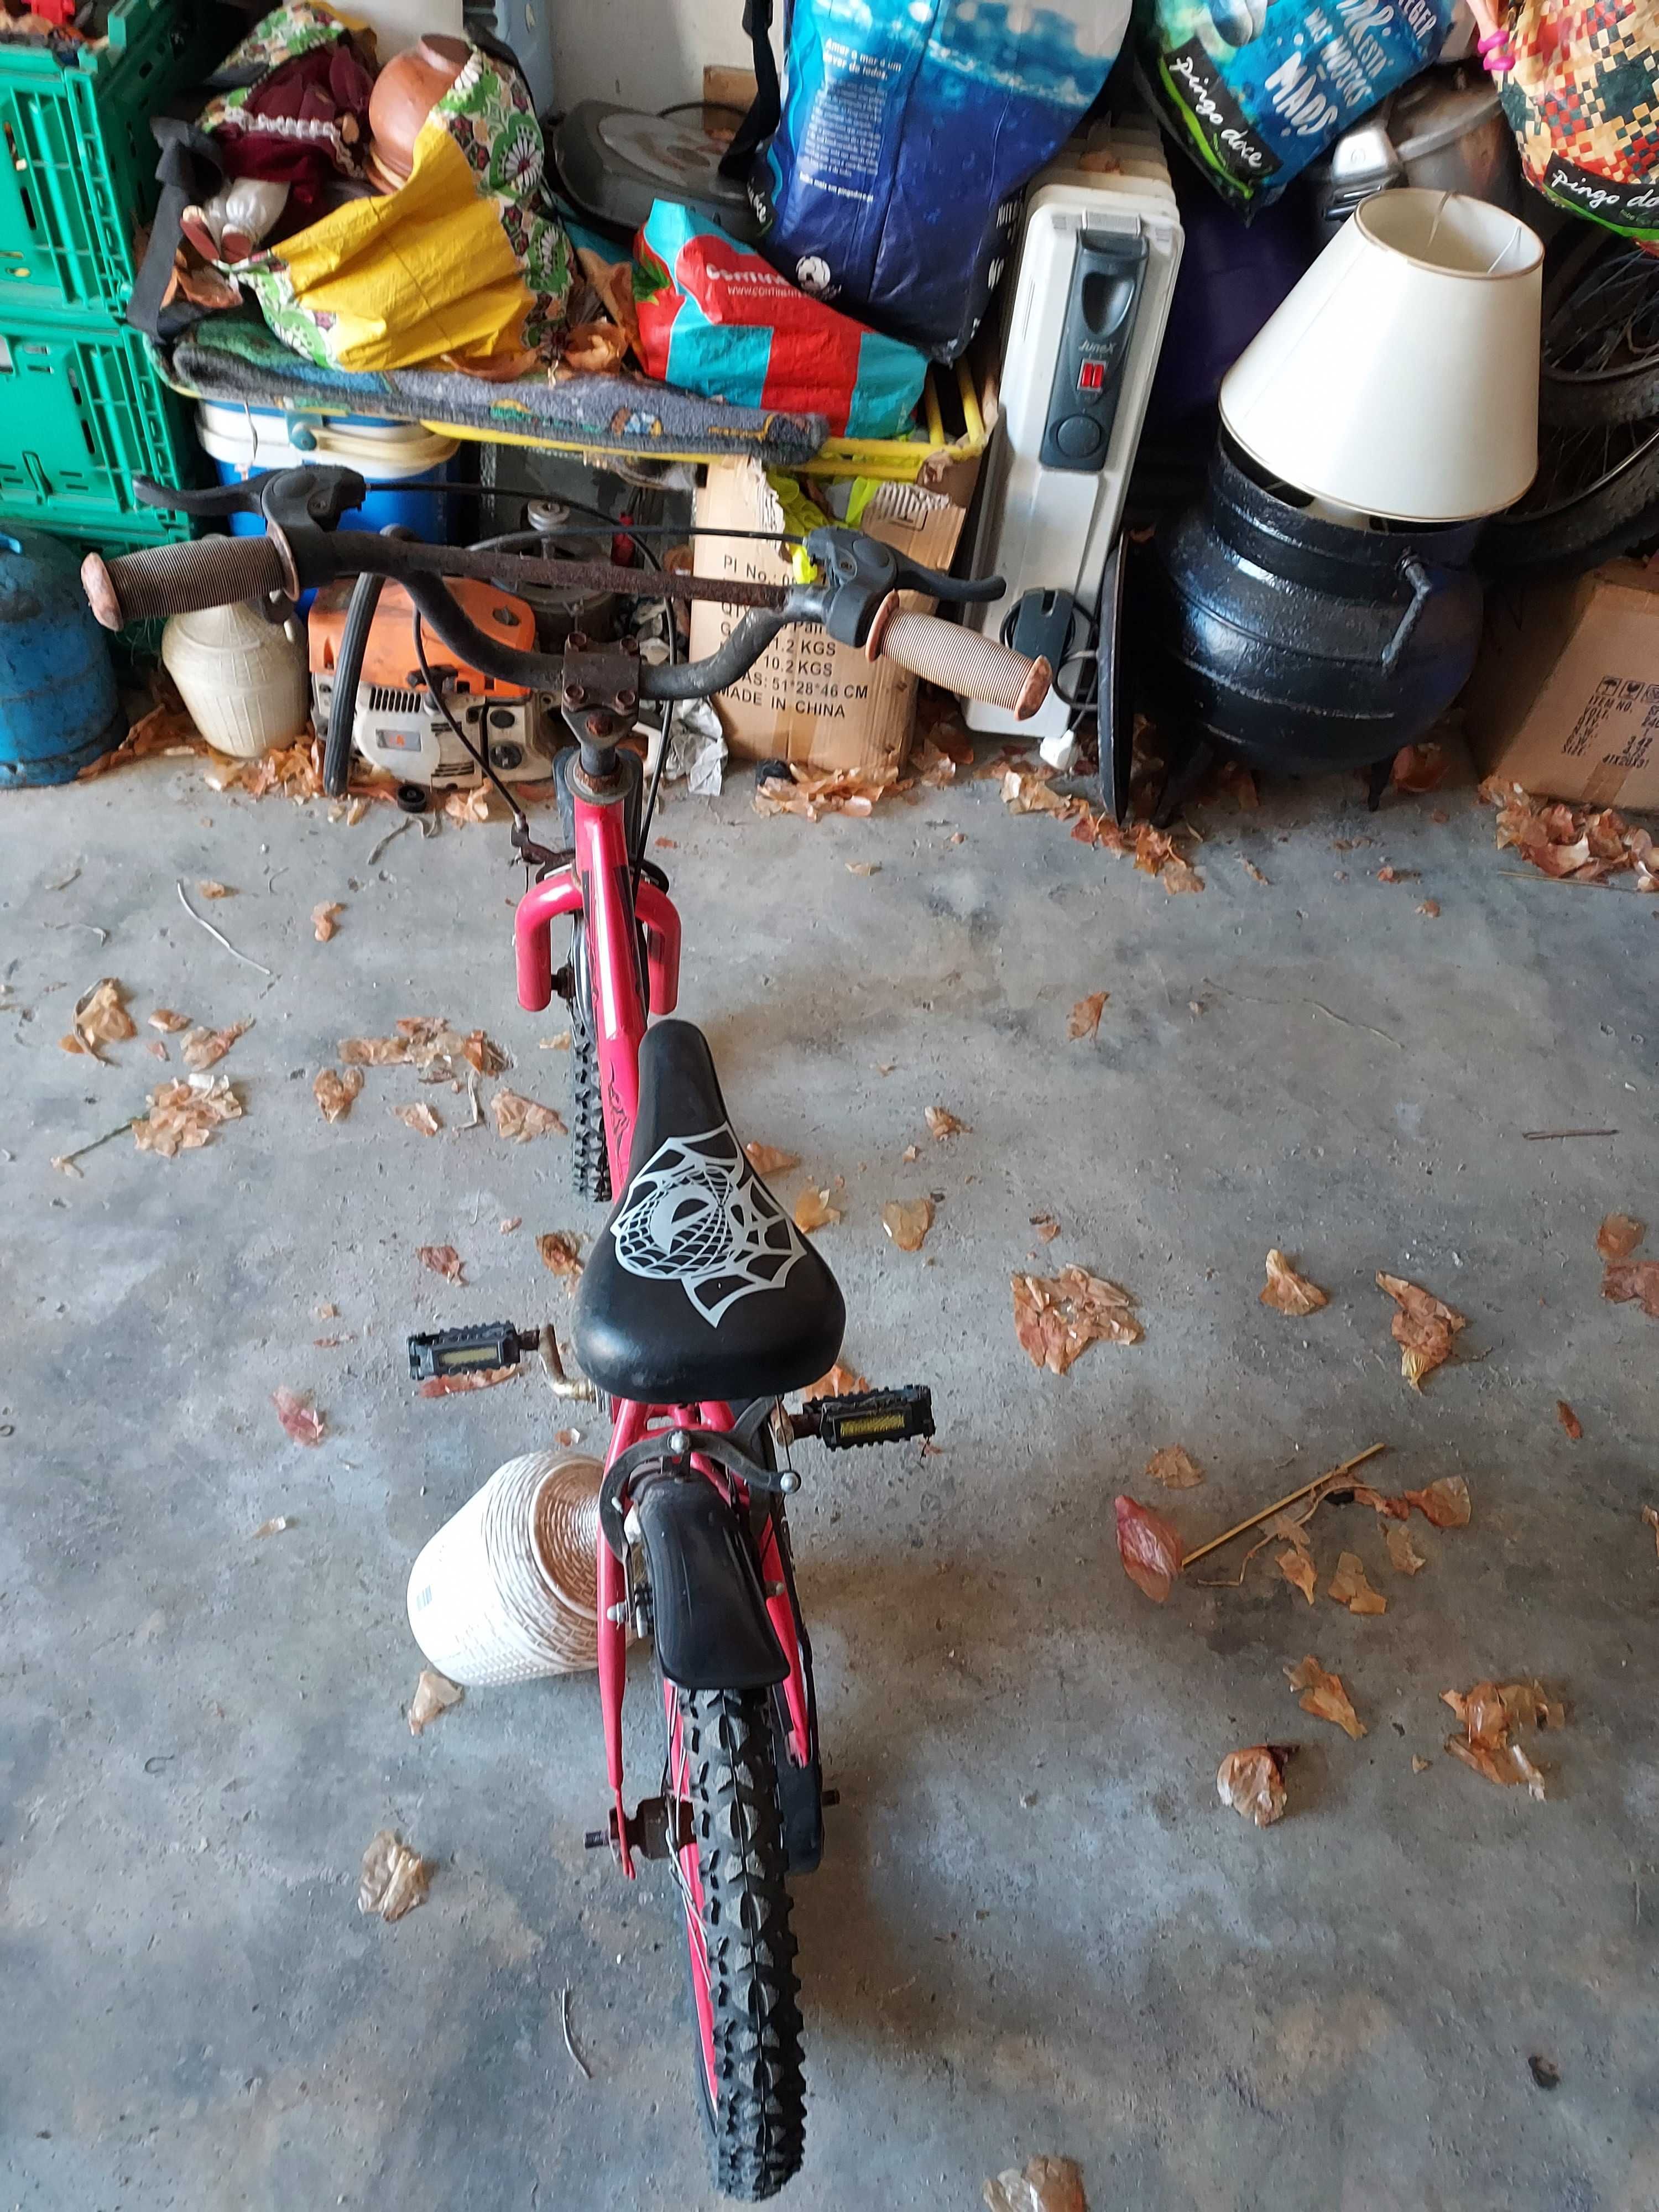 bicicleta de criança em bom estado